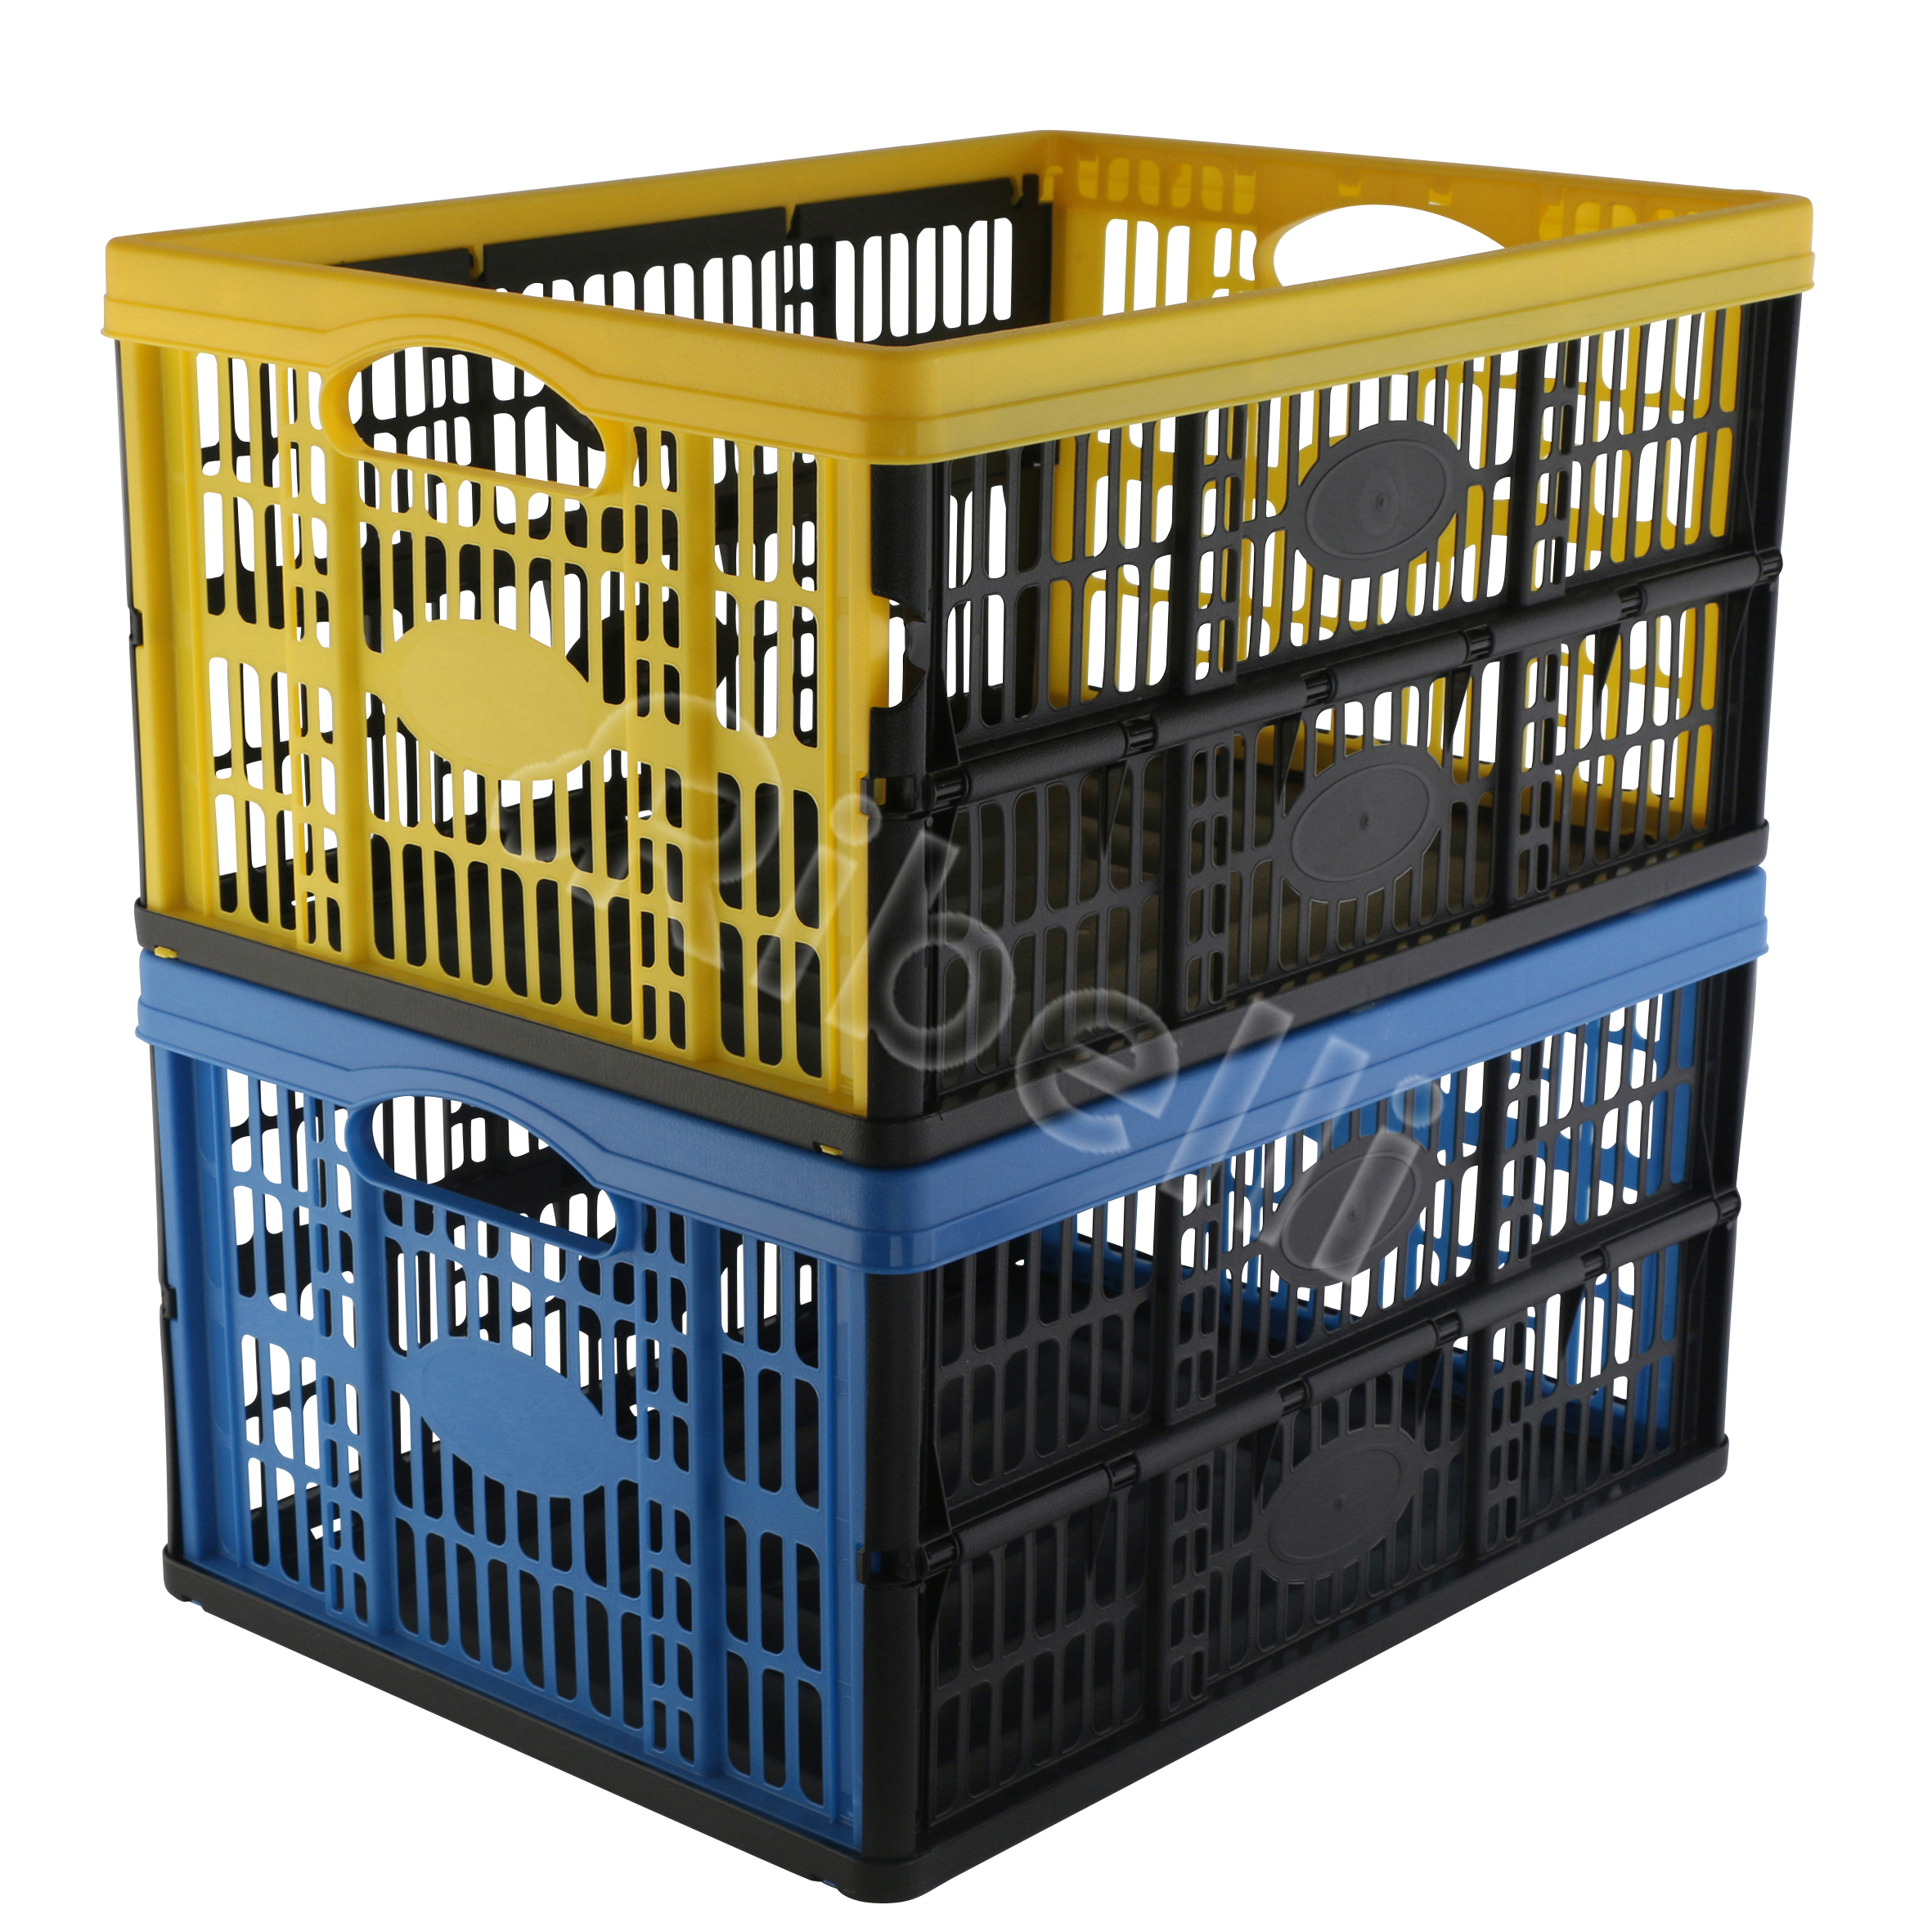 Paket] Klappbox 32L versch. Farben Transportbox Einkaufsbox